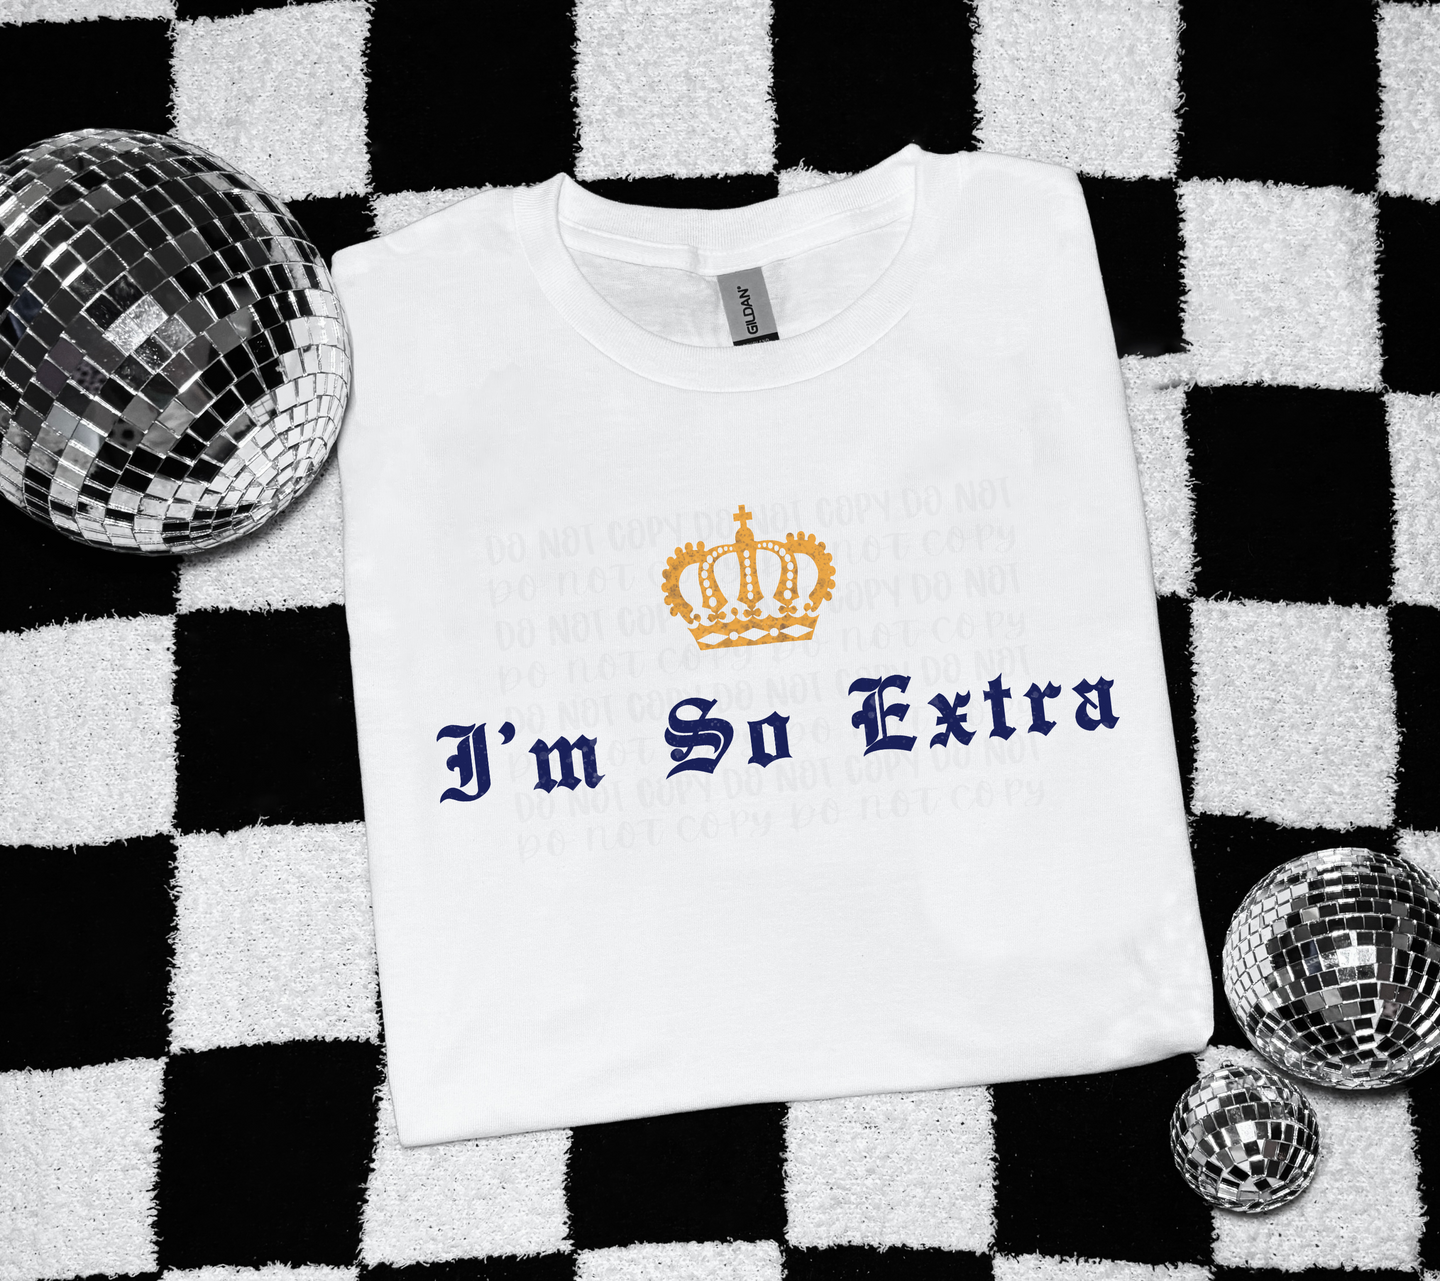 I'm so extra